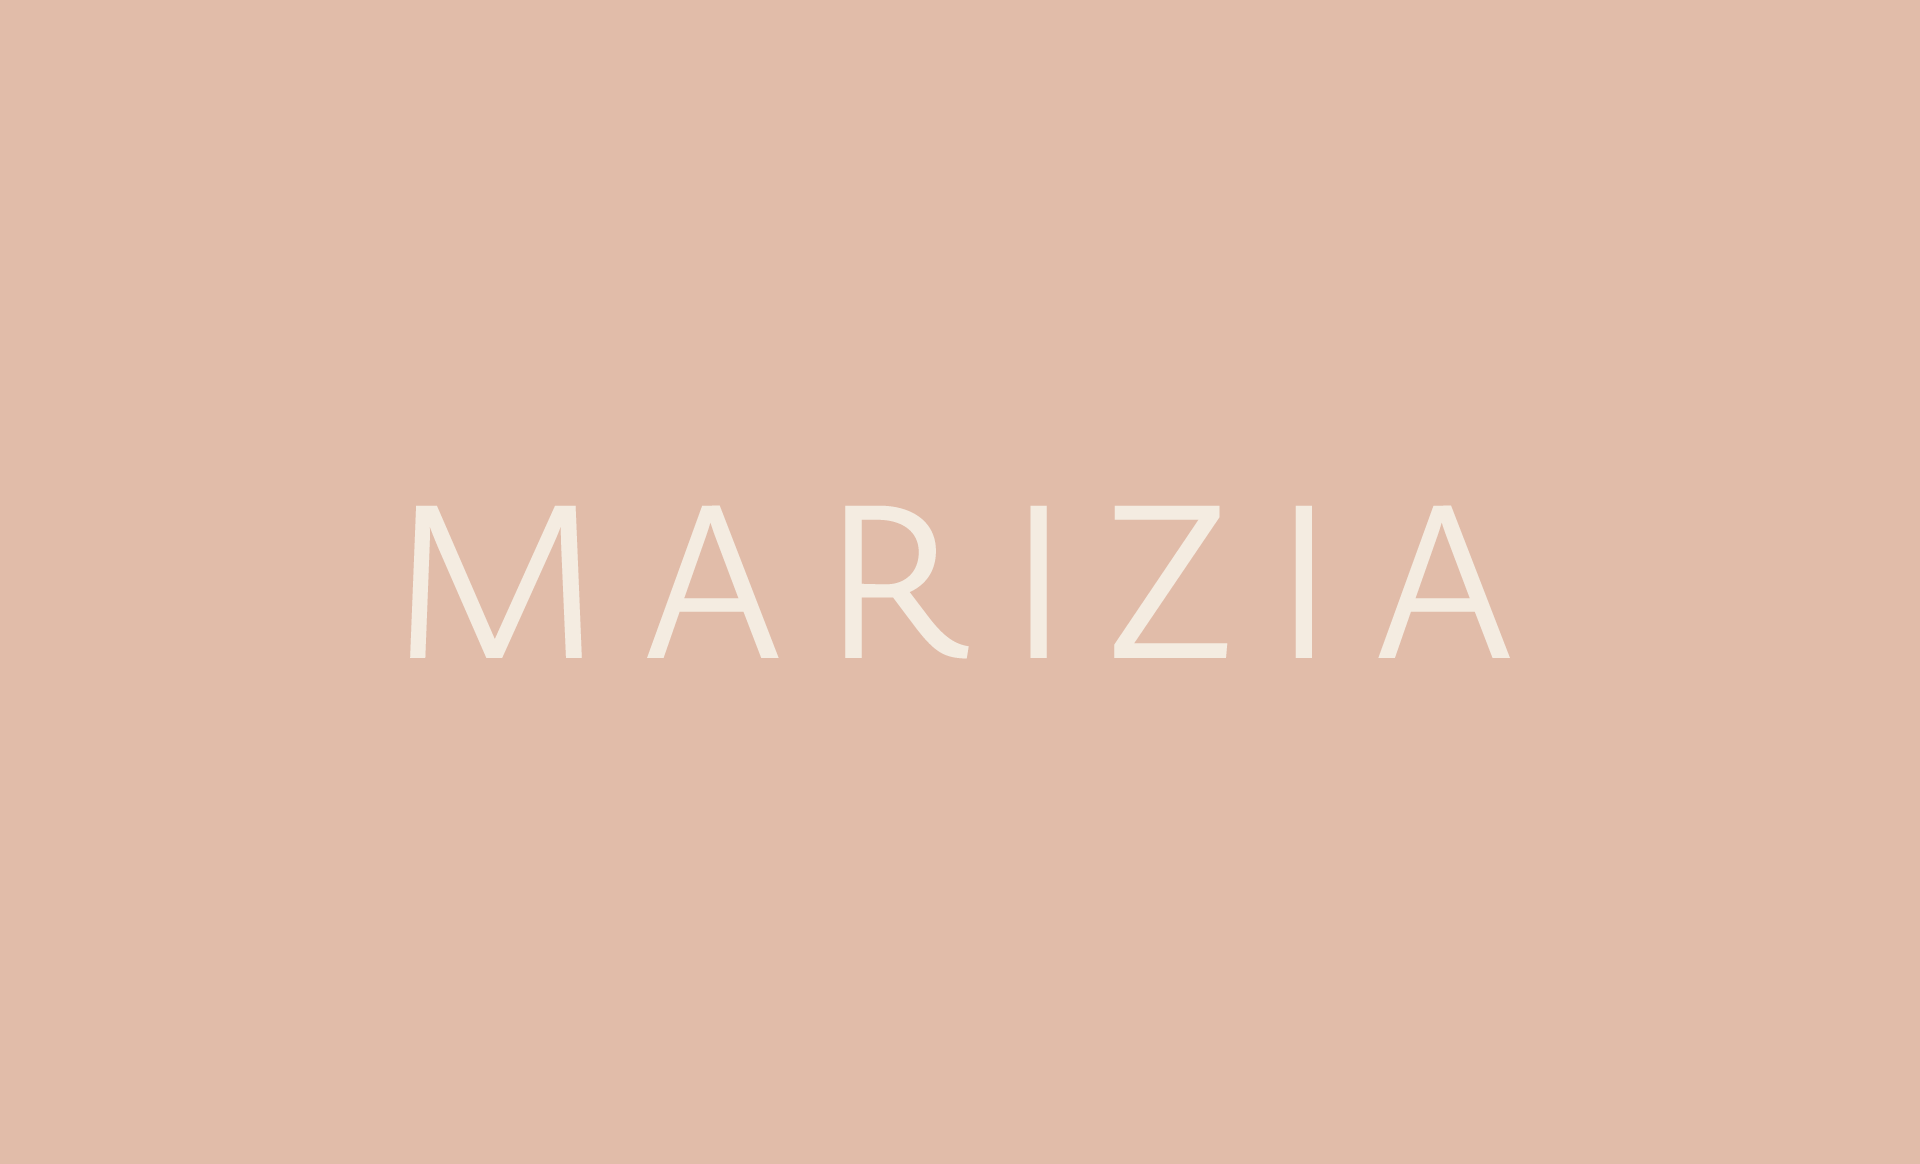 Marizia-logo1